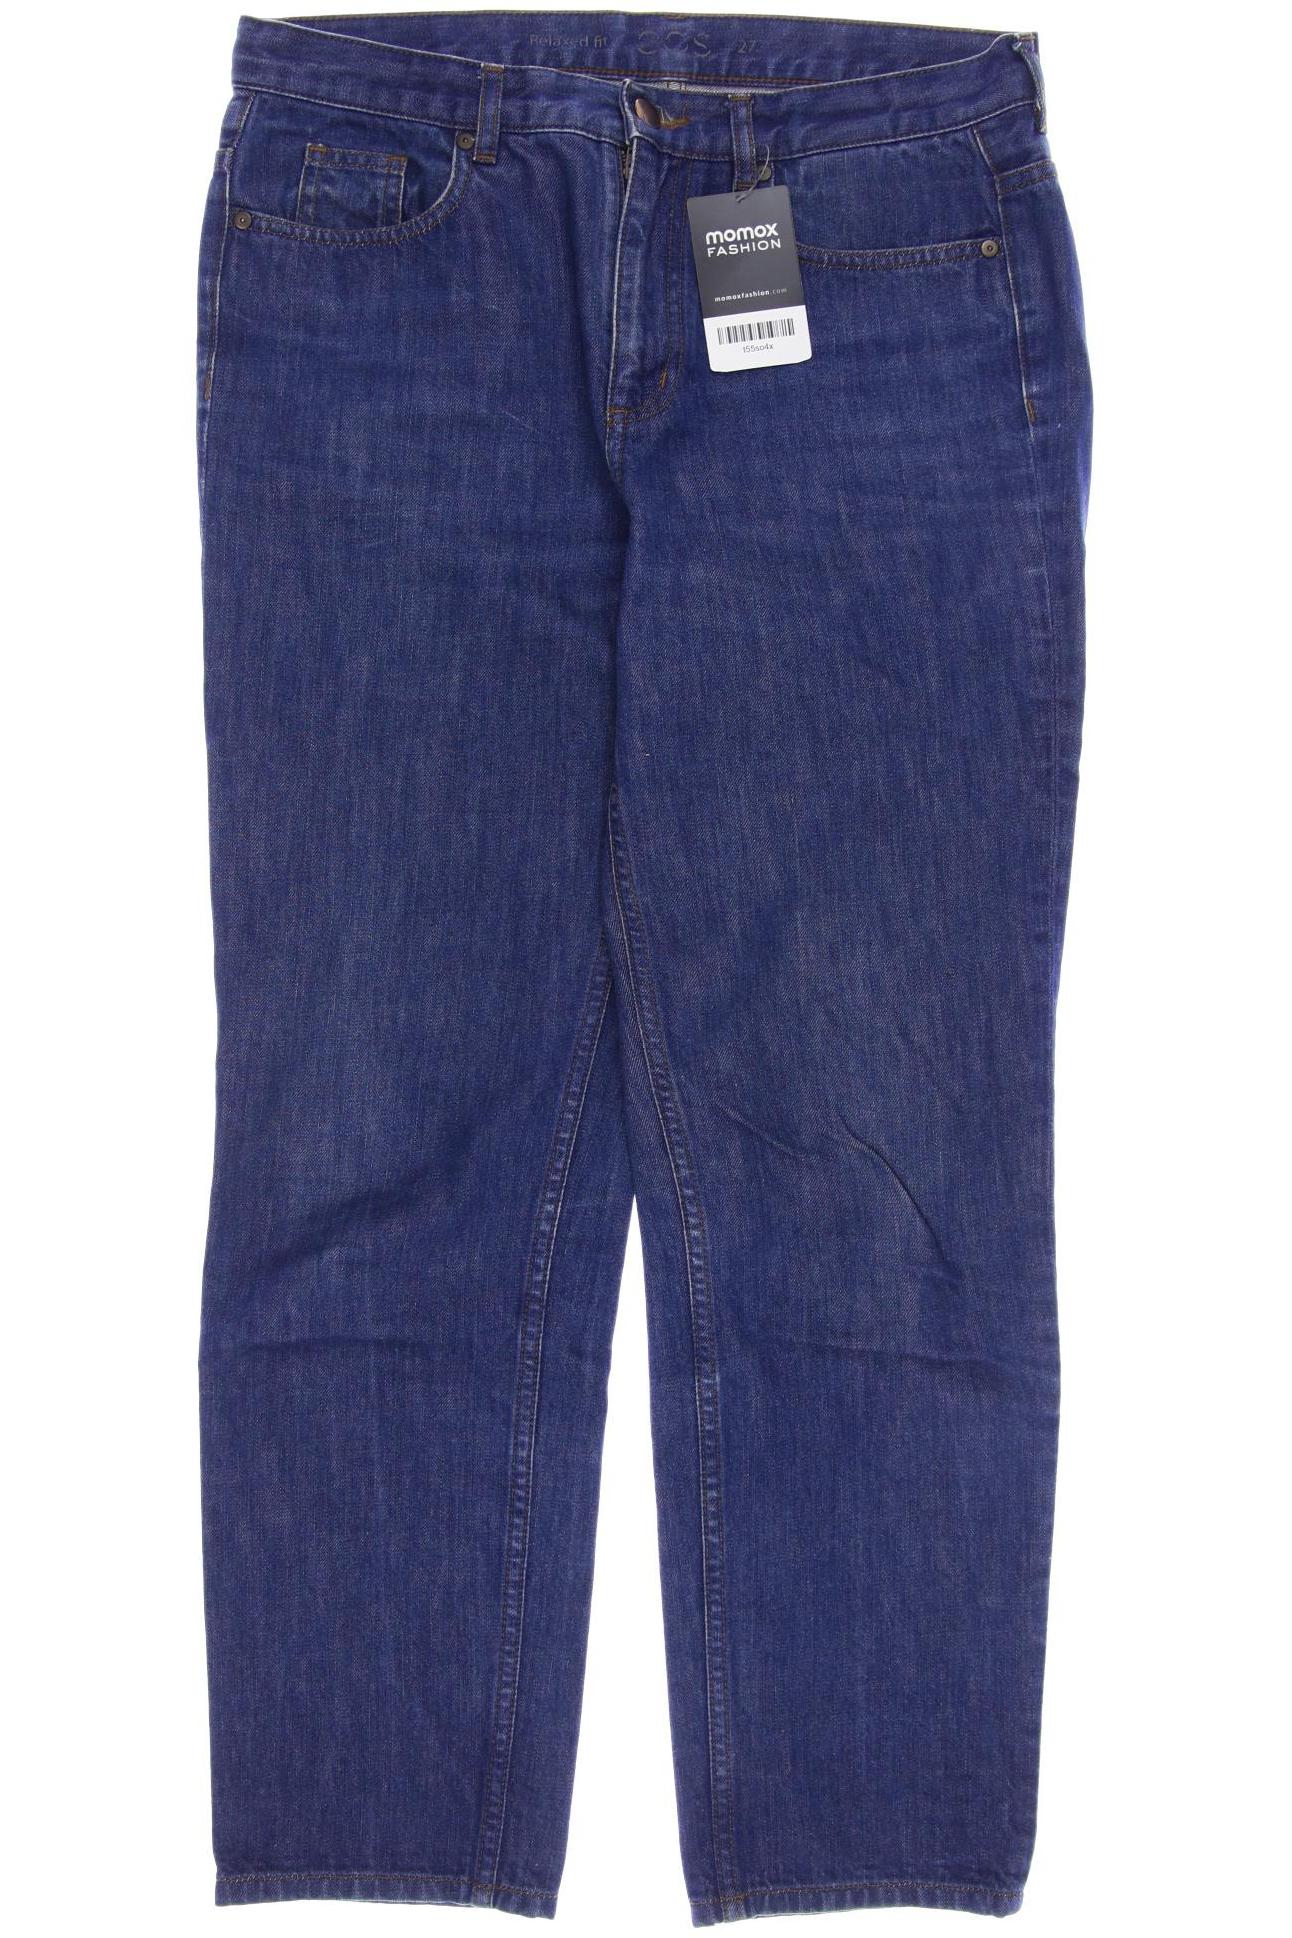 COS Damen Jeans, marineblau von COS